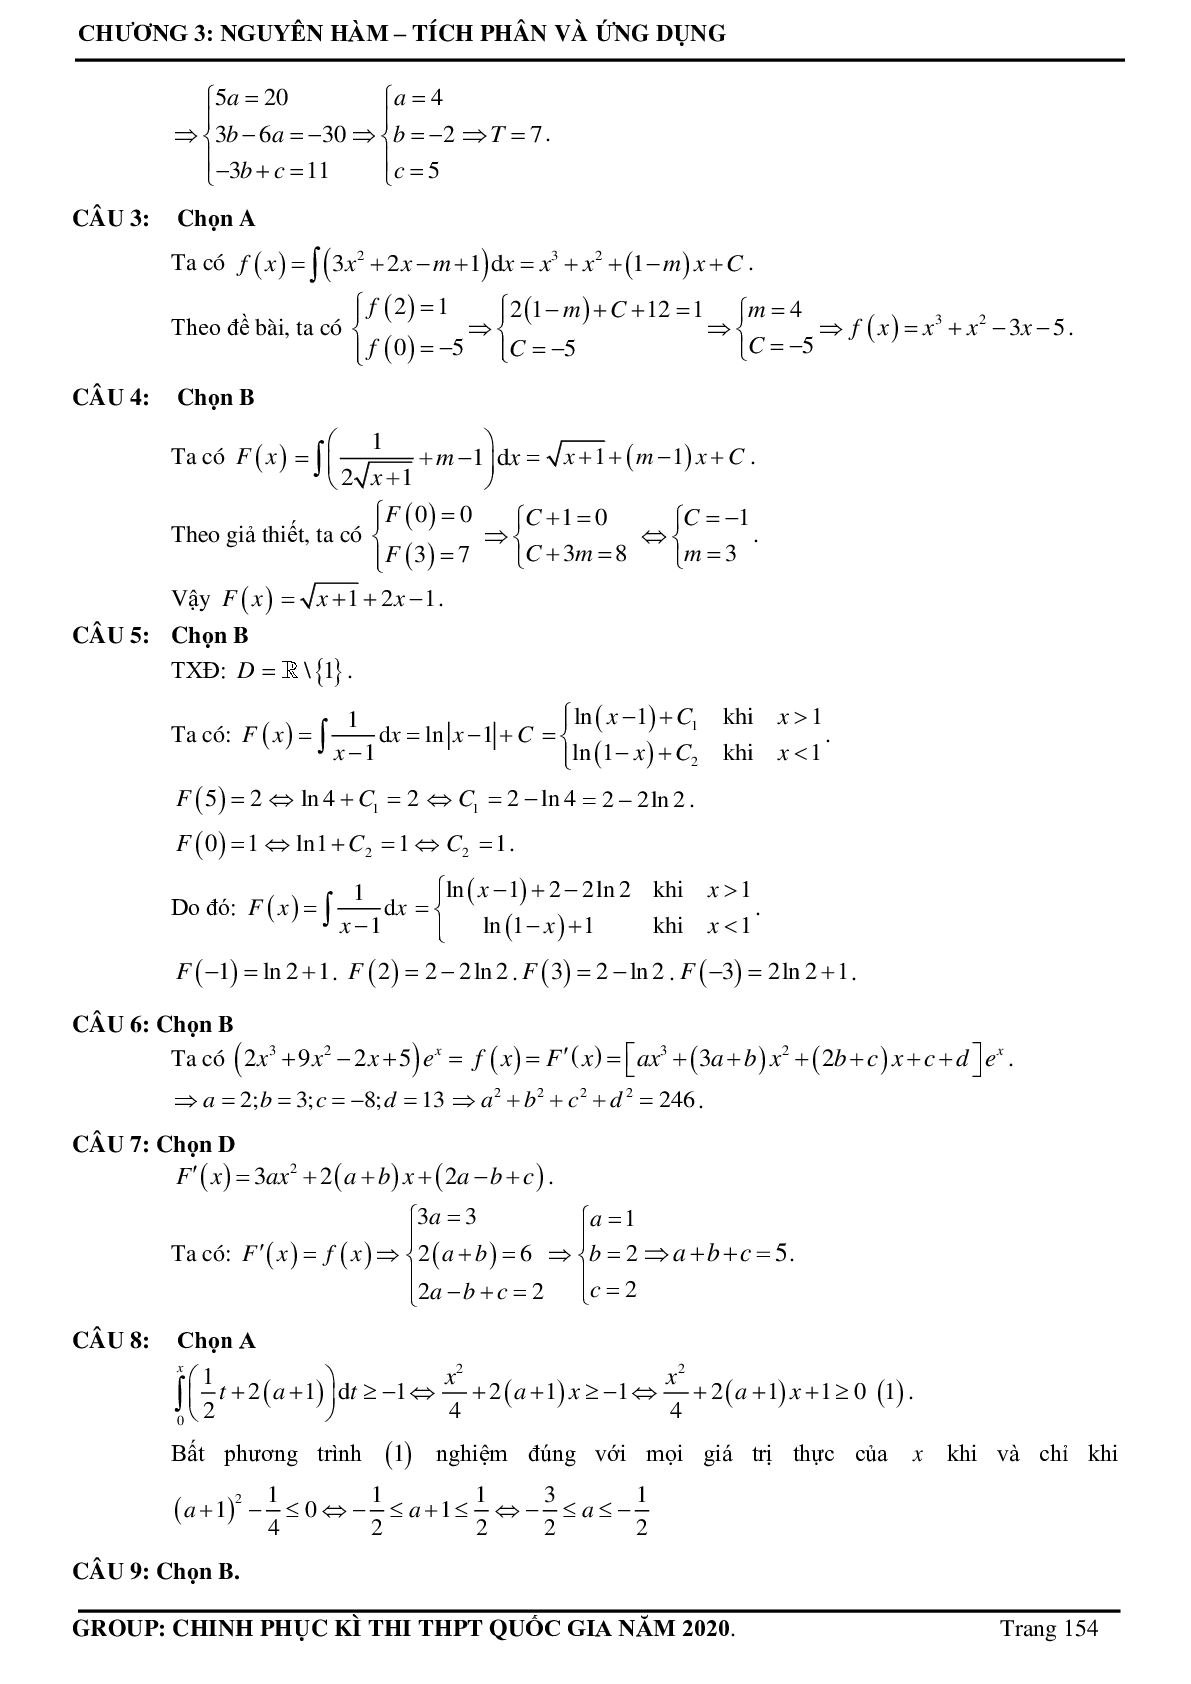 Tuyển chọn các bài toán Nguyên hàm - Tích phân Vận dụng cao thường xuất hiện trong đề thi - có đáp án chi tiết (trang 5)